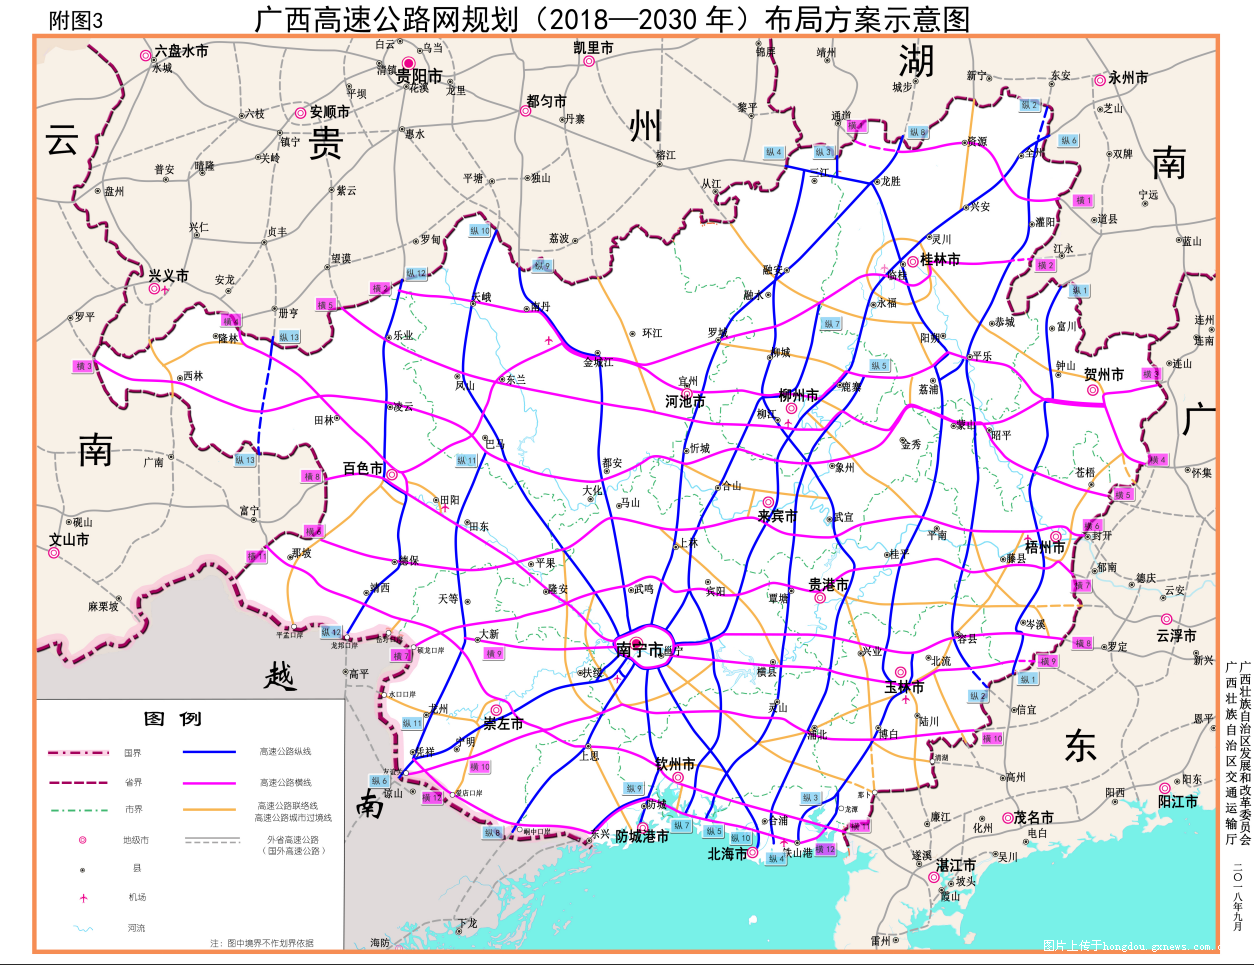 广西高速公路网规划(2018-2030)布局方案示意图.png